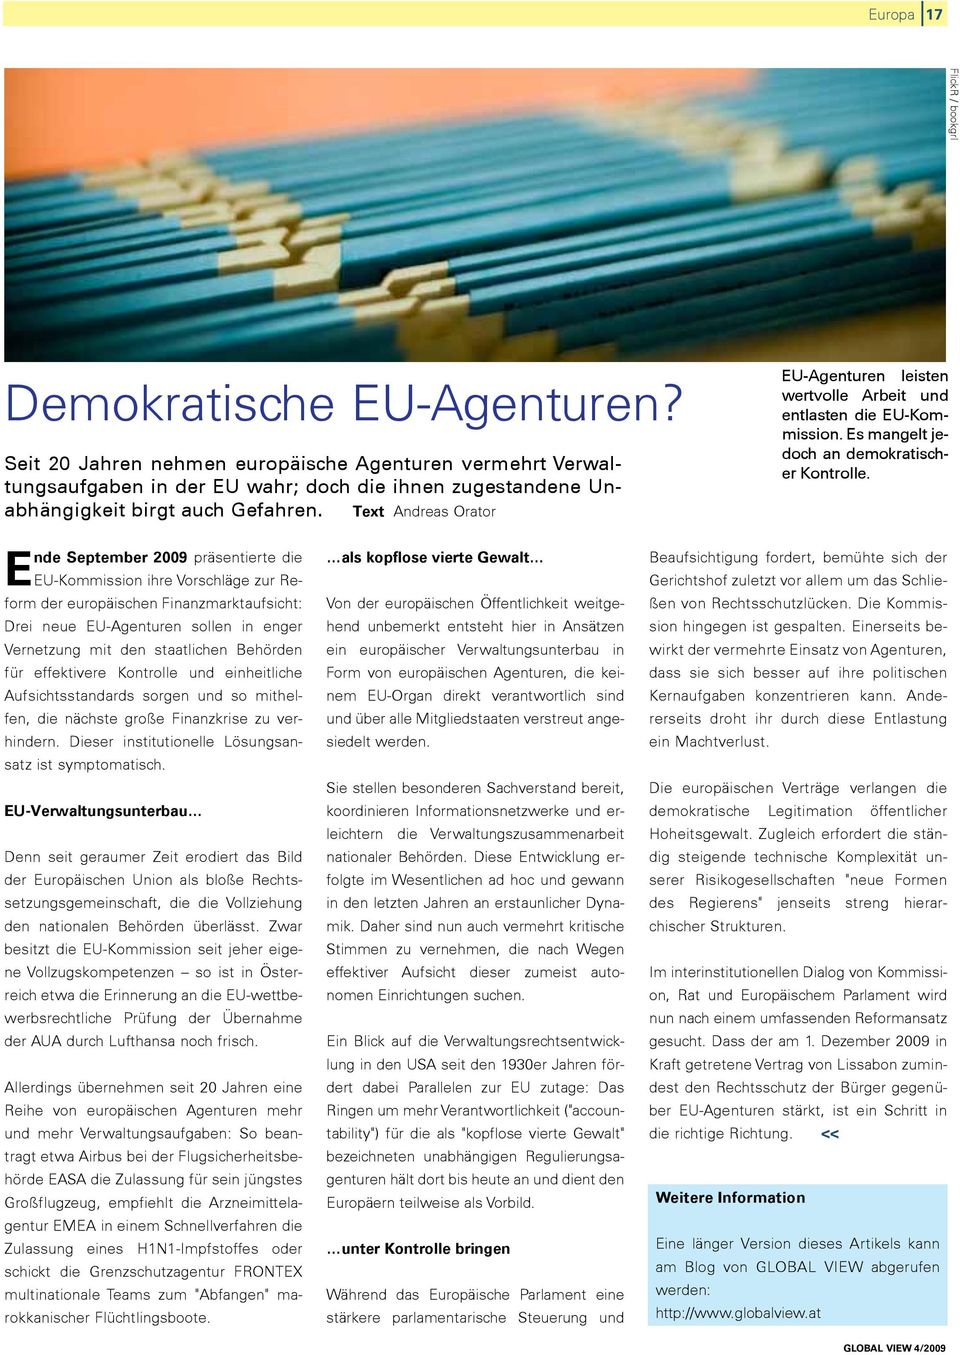 Text Andreas Orator EU-Agenturen leisten wertvolle Arbeit und entlasten die EU-Kommission. Es mangelt jedoch an demokratischer Kontrolle. http://www.flickr.